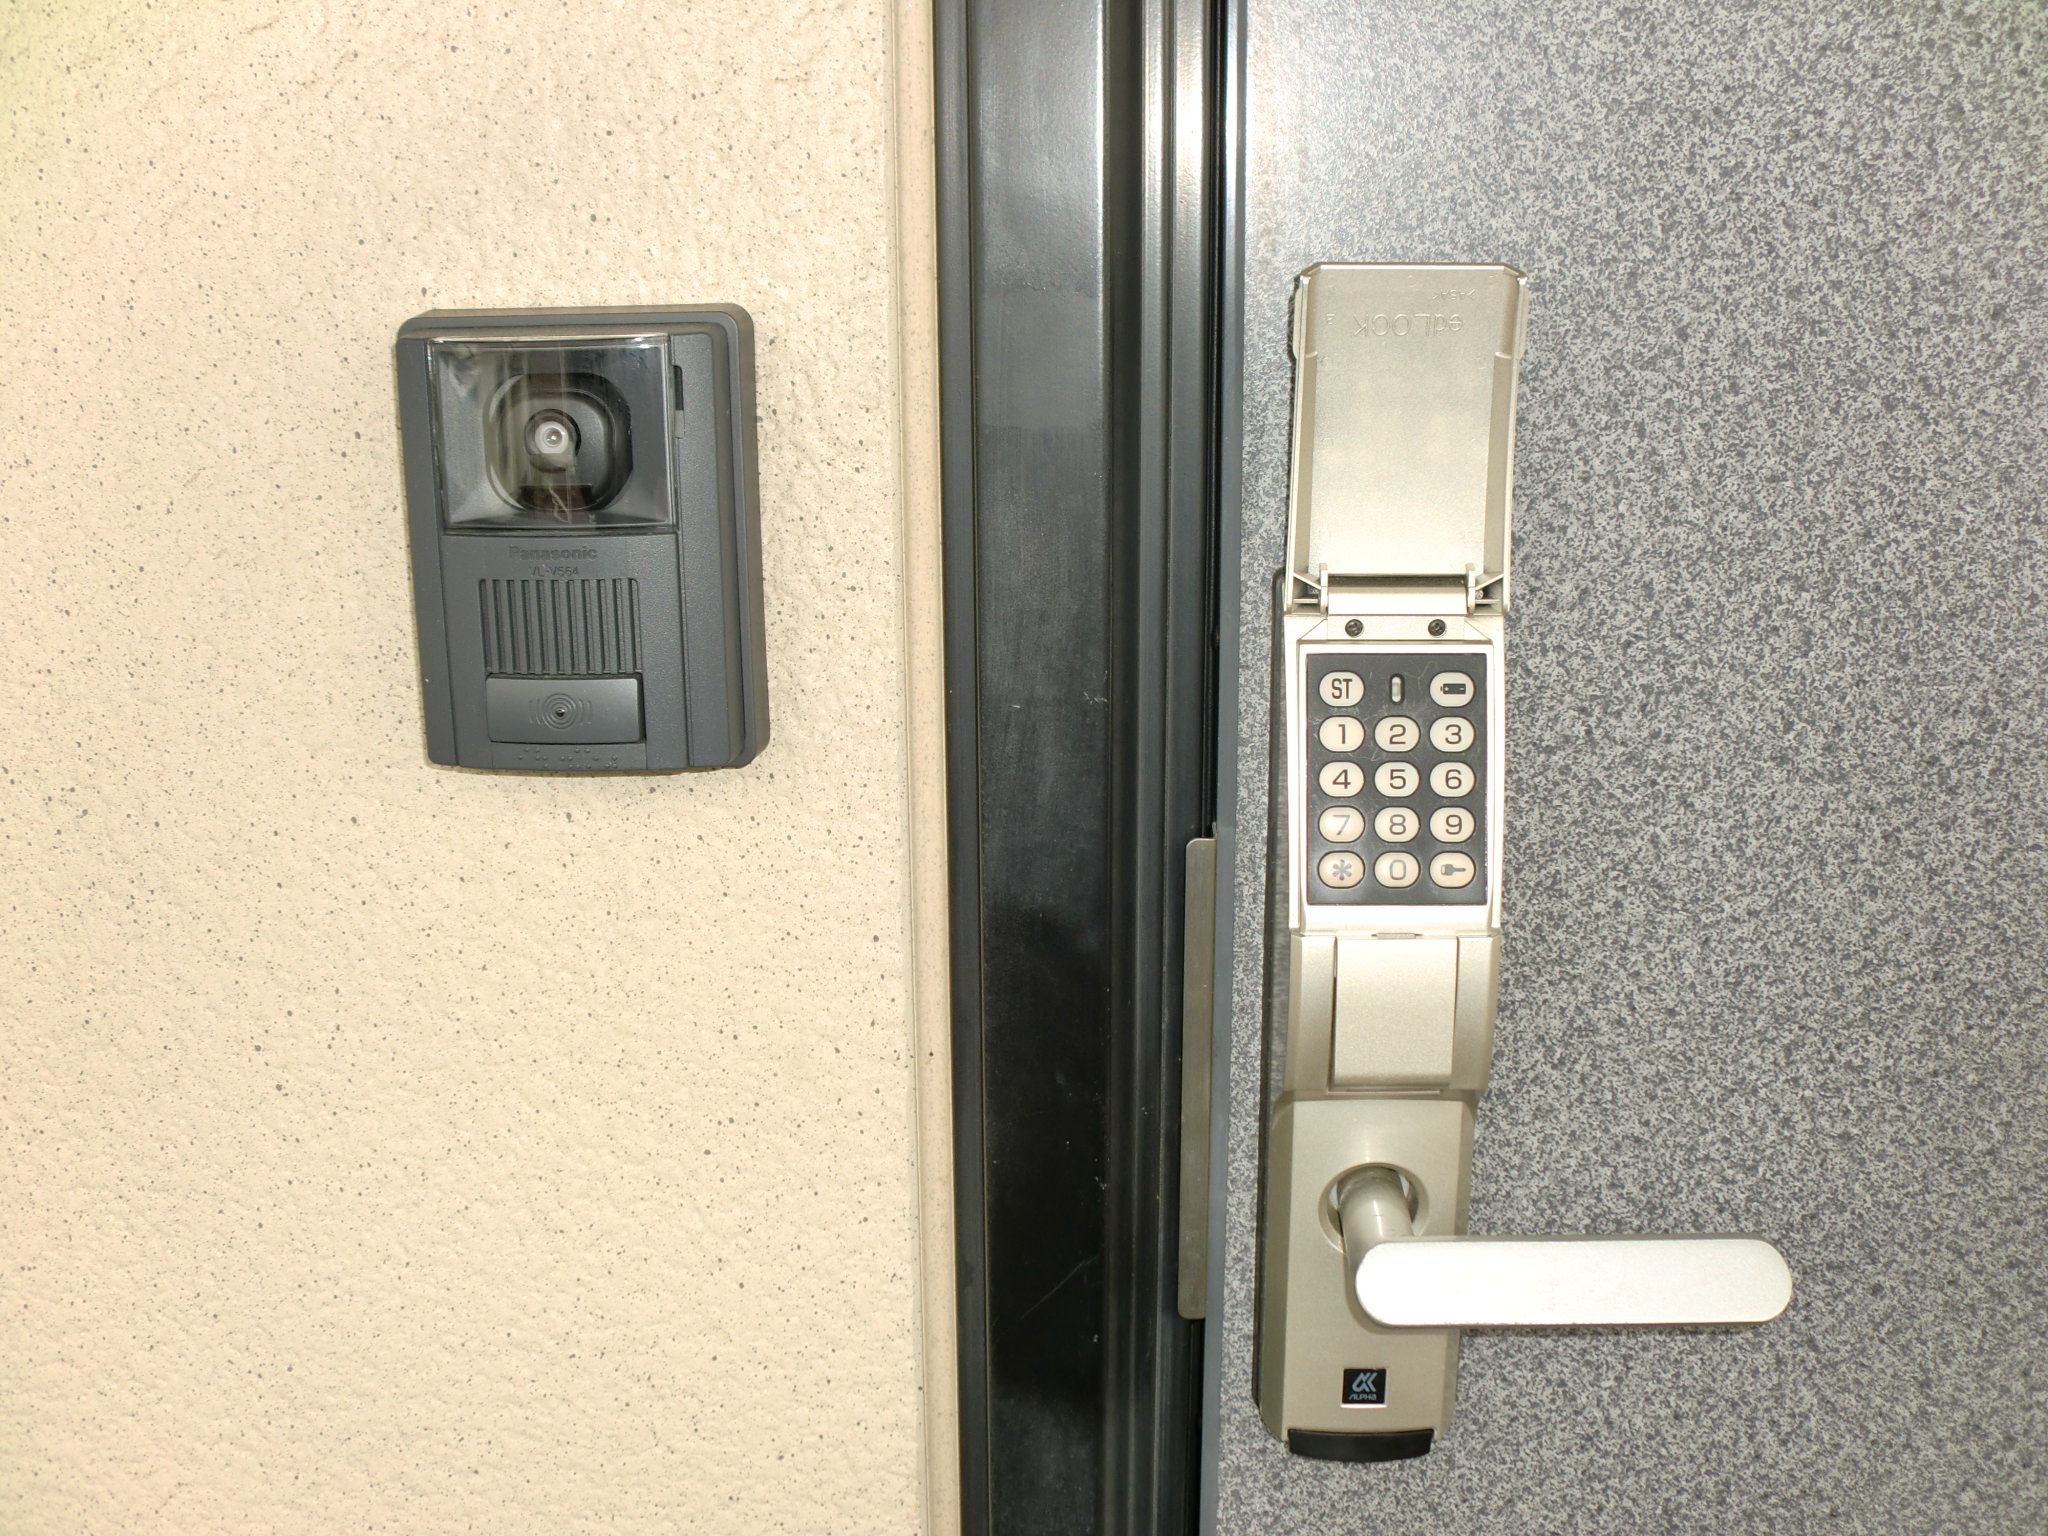 Security. Digital key